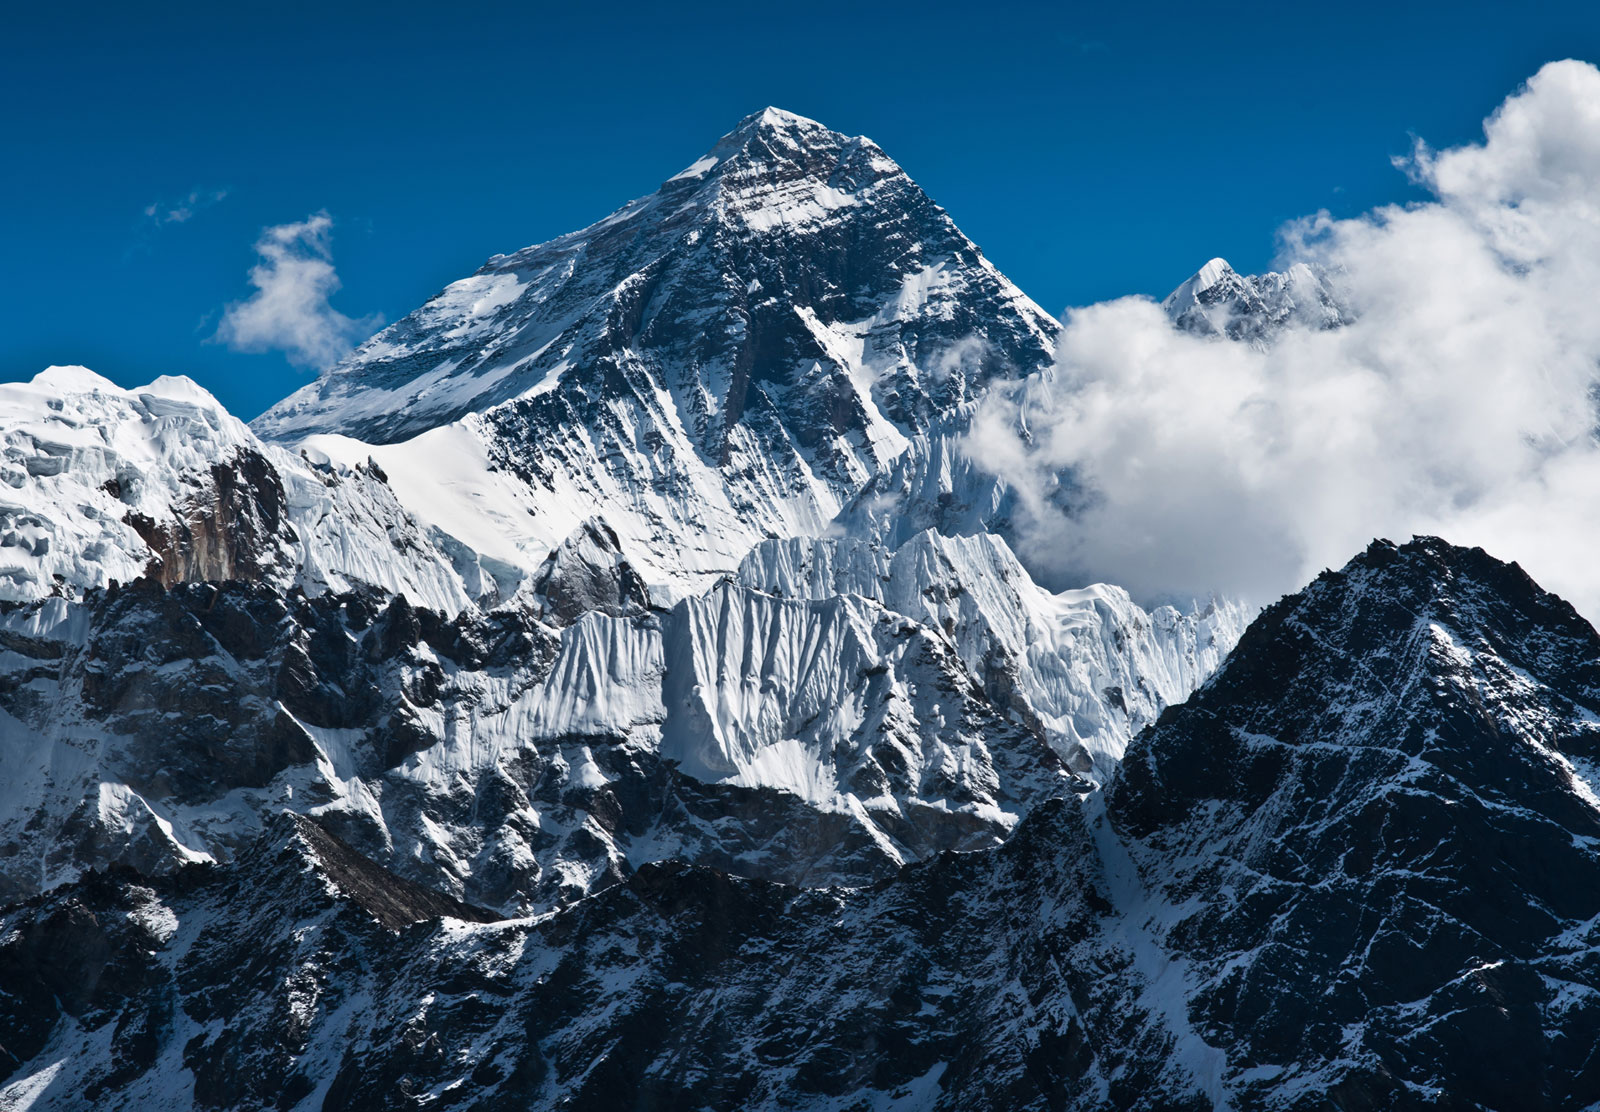 Highest Peak of China - Mount Everest